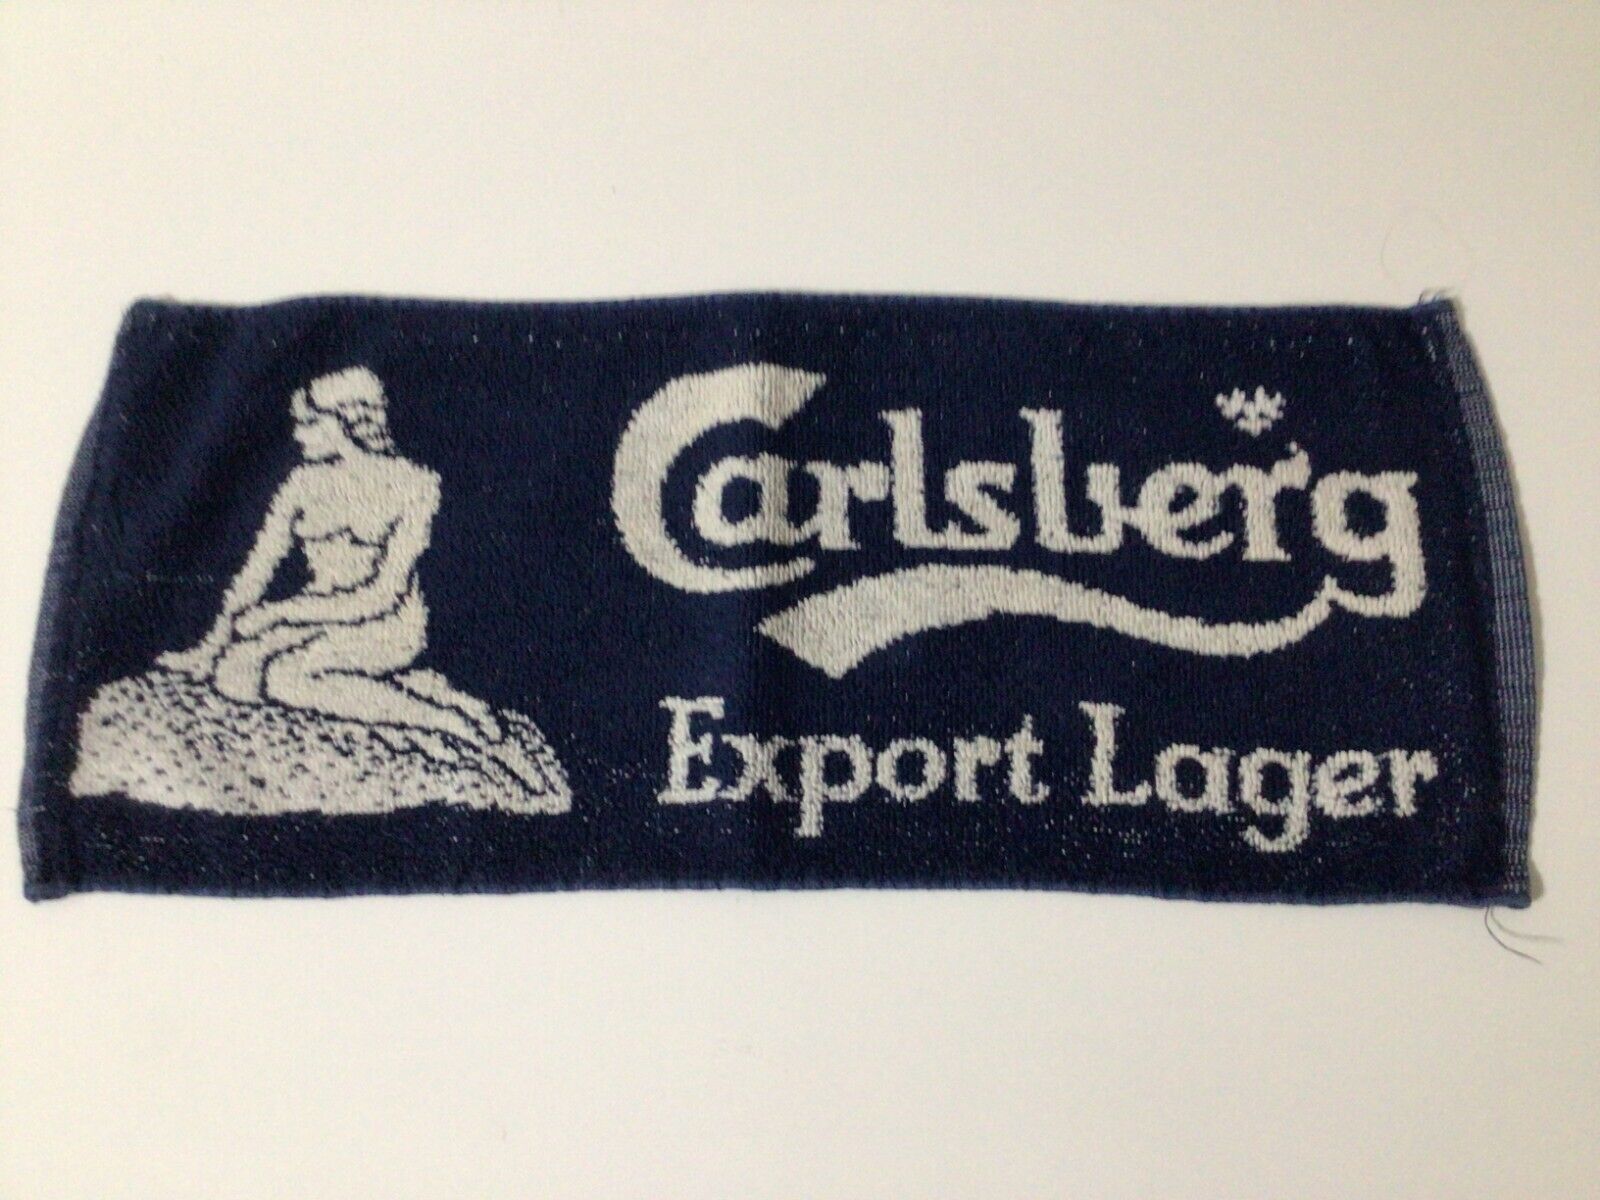 Carlsberg Export Lager Beer Towel, measures  7 1/2\